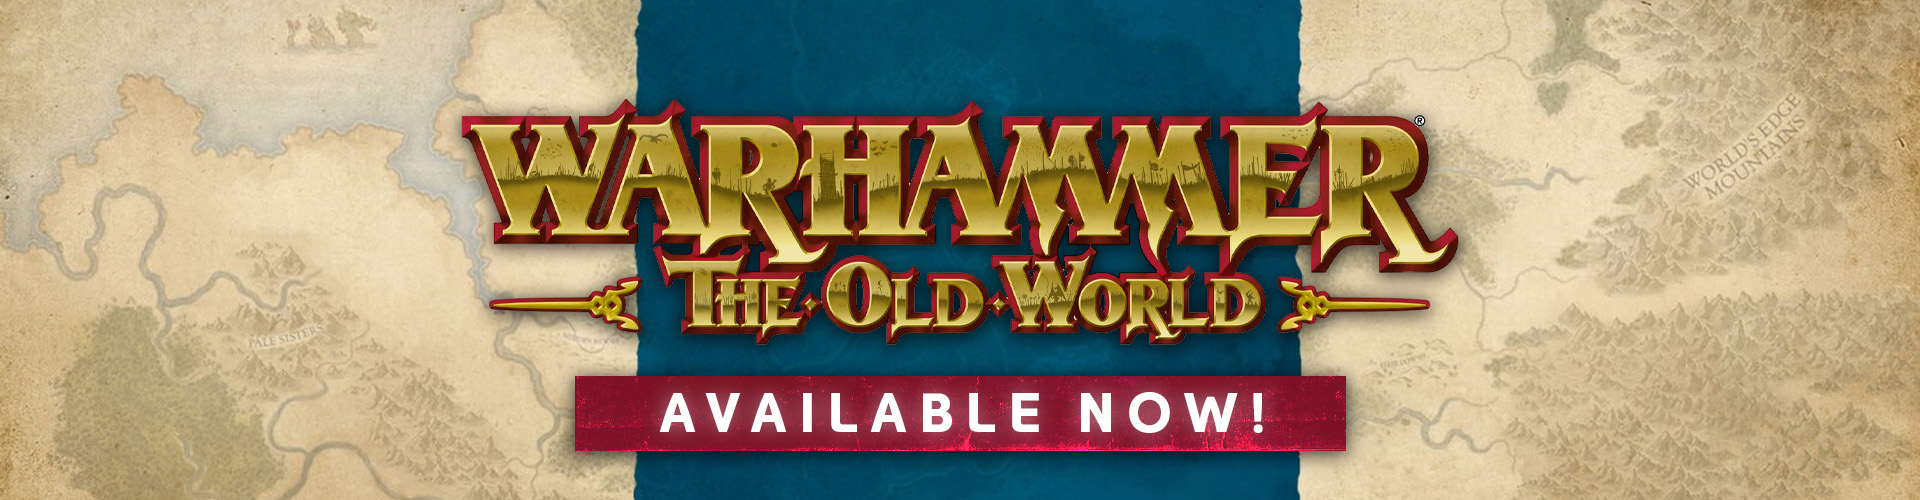 Warhammer Old World Desktop Banner